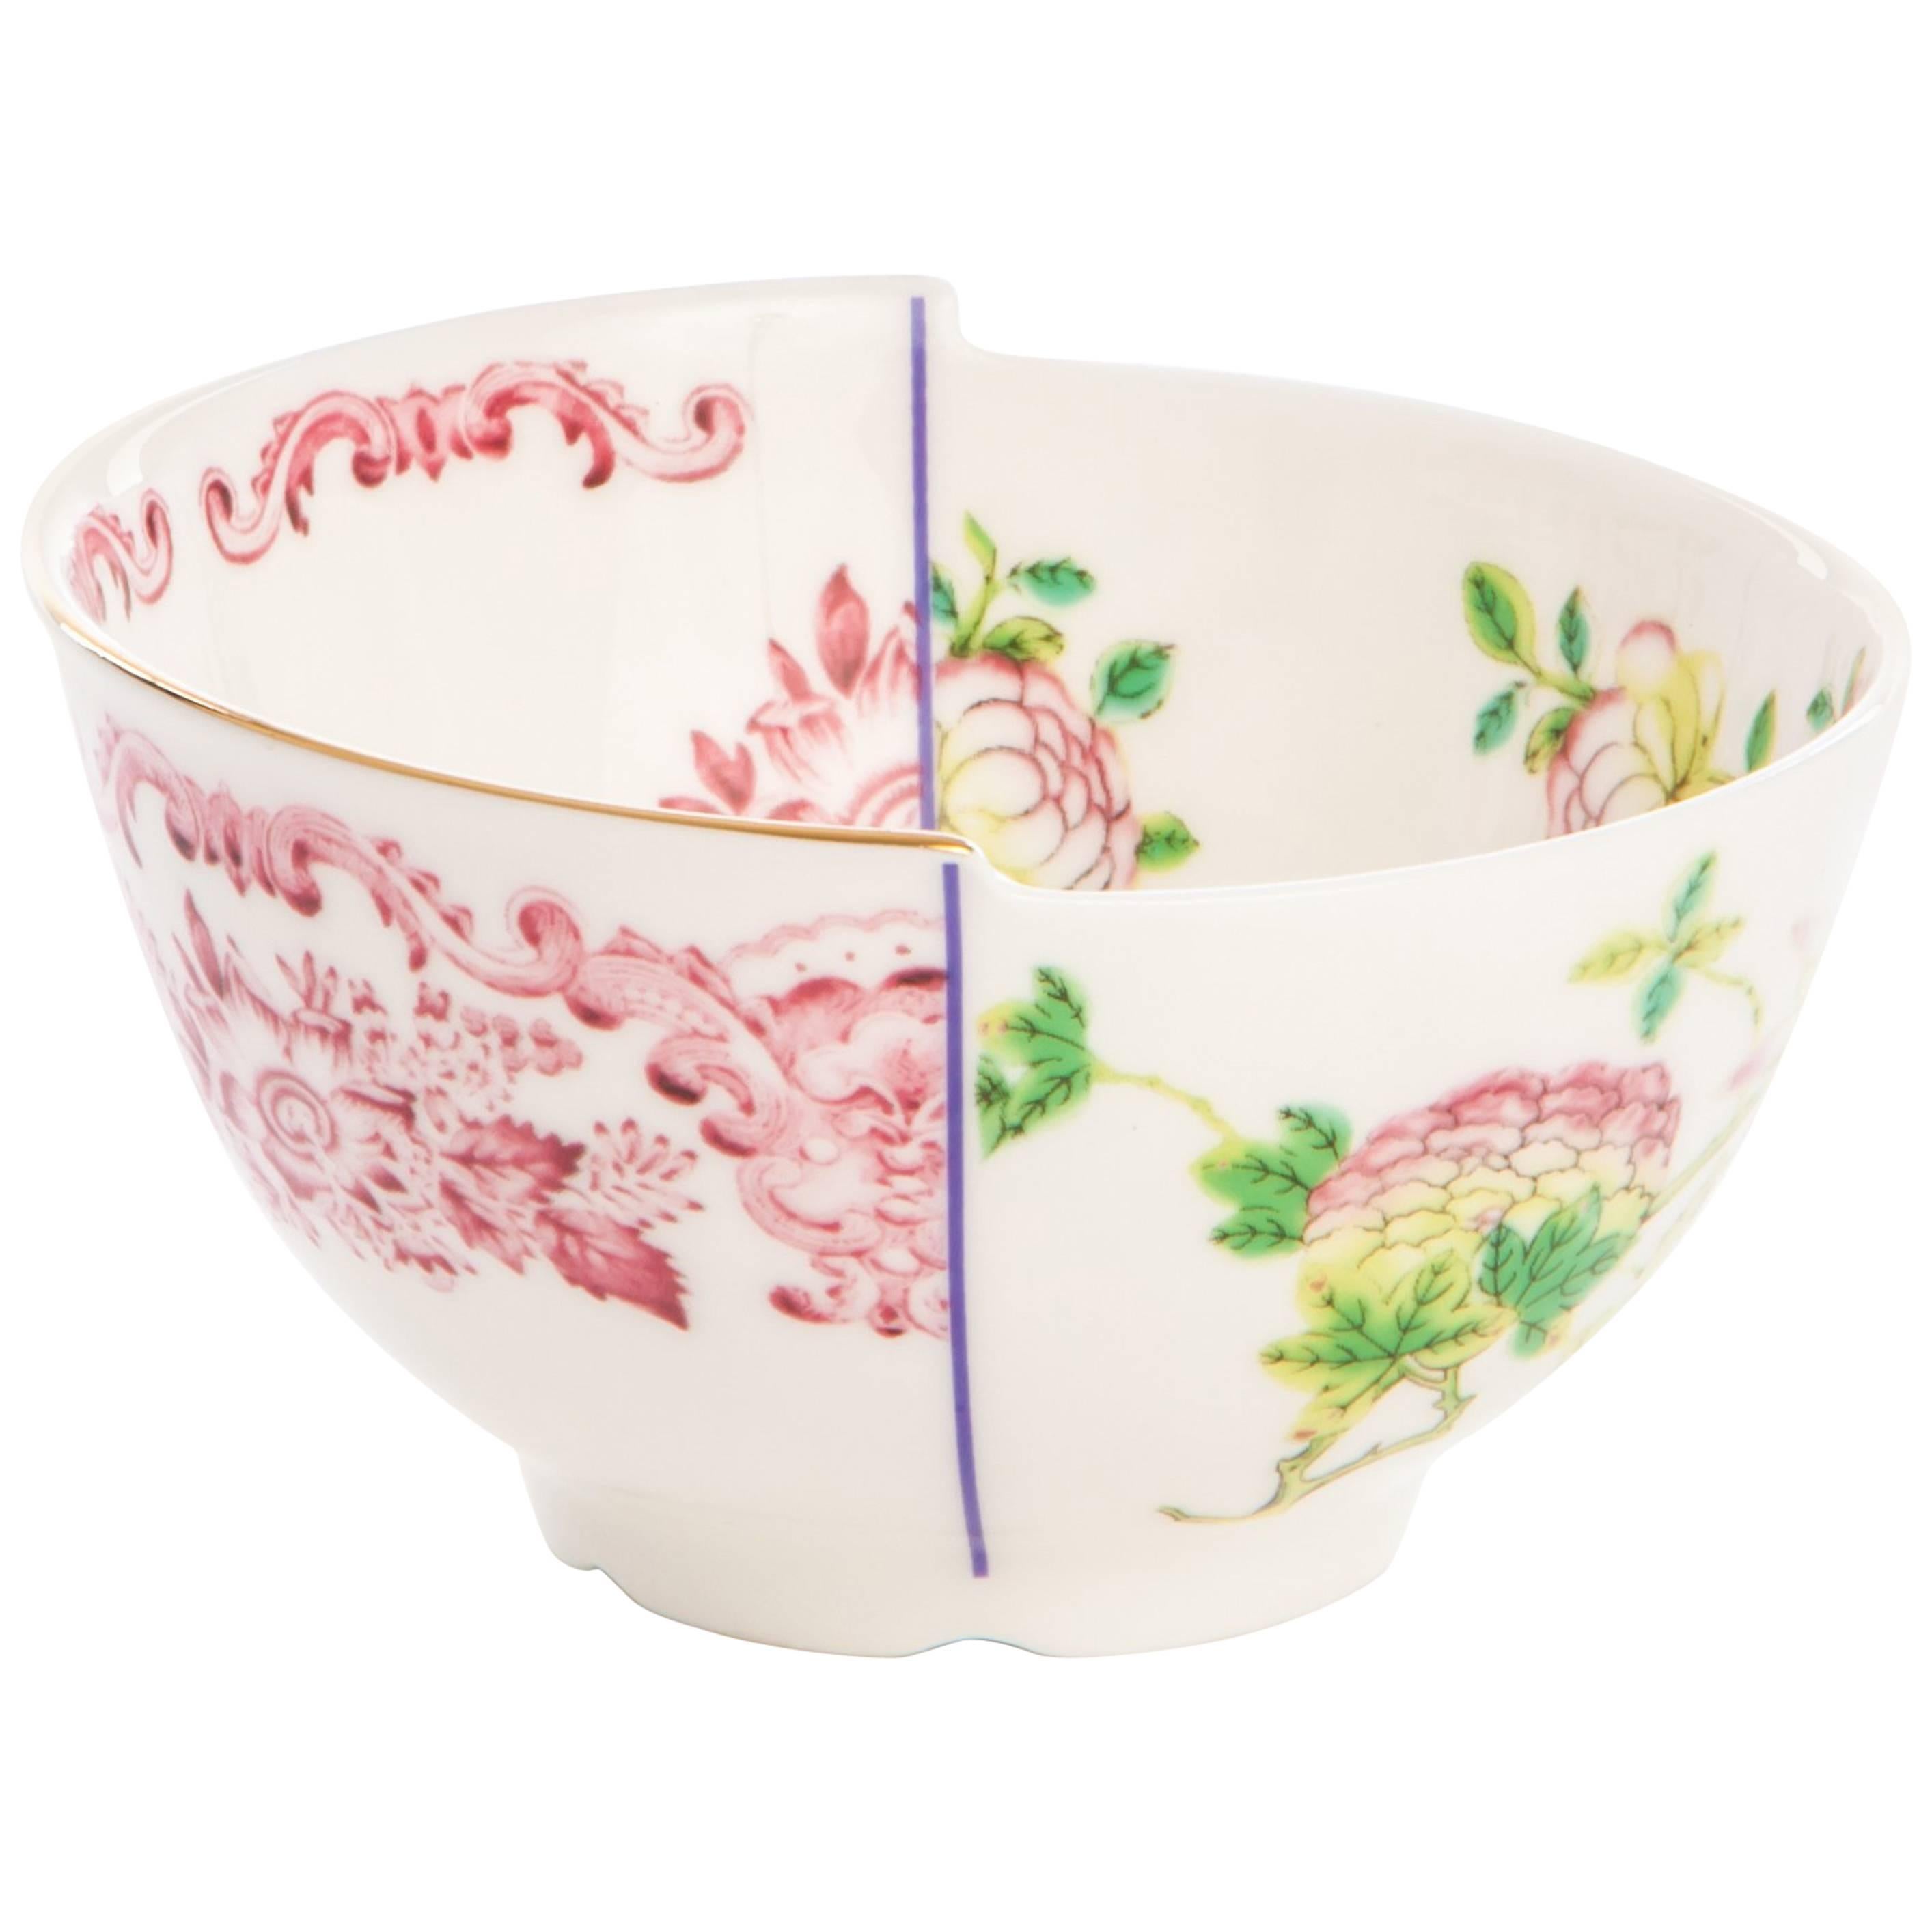 Seletti "Hybrid-Olinda" Porcelain Fruit Bowls For Sale